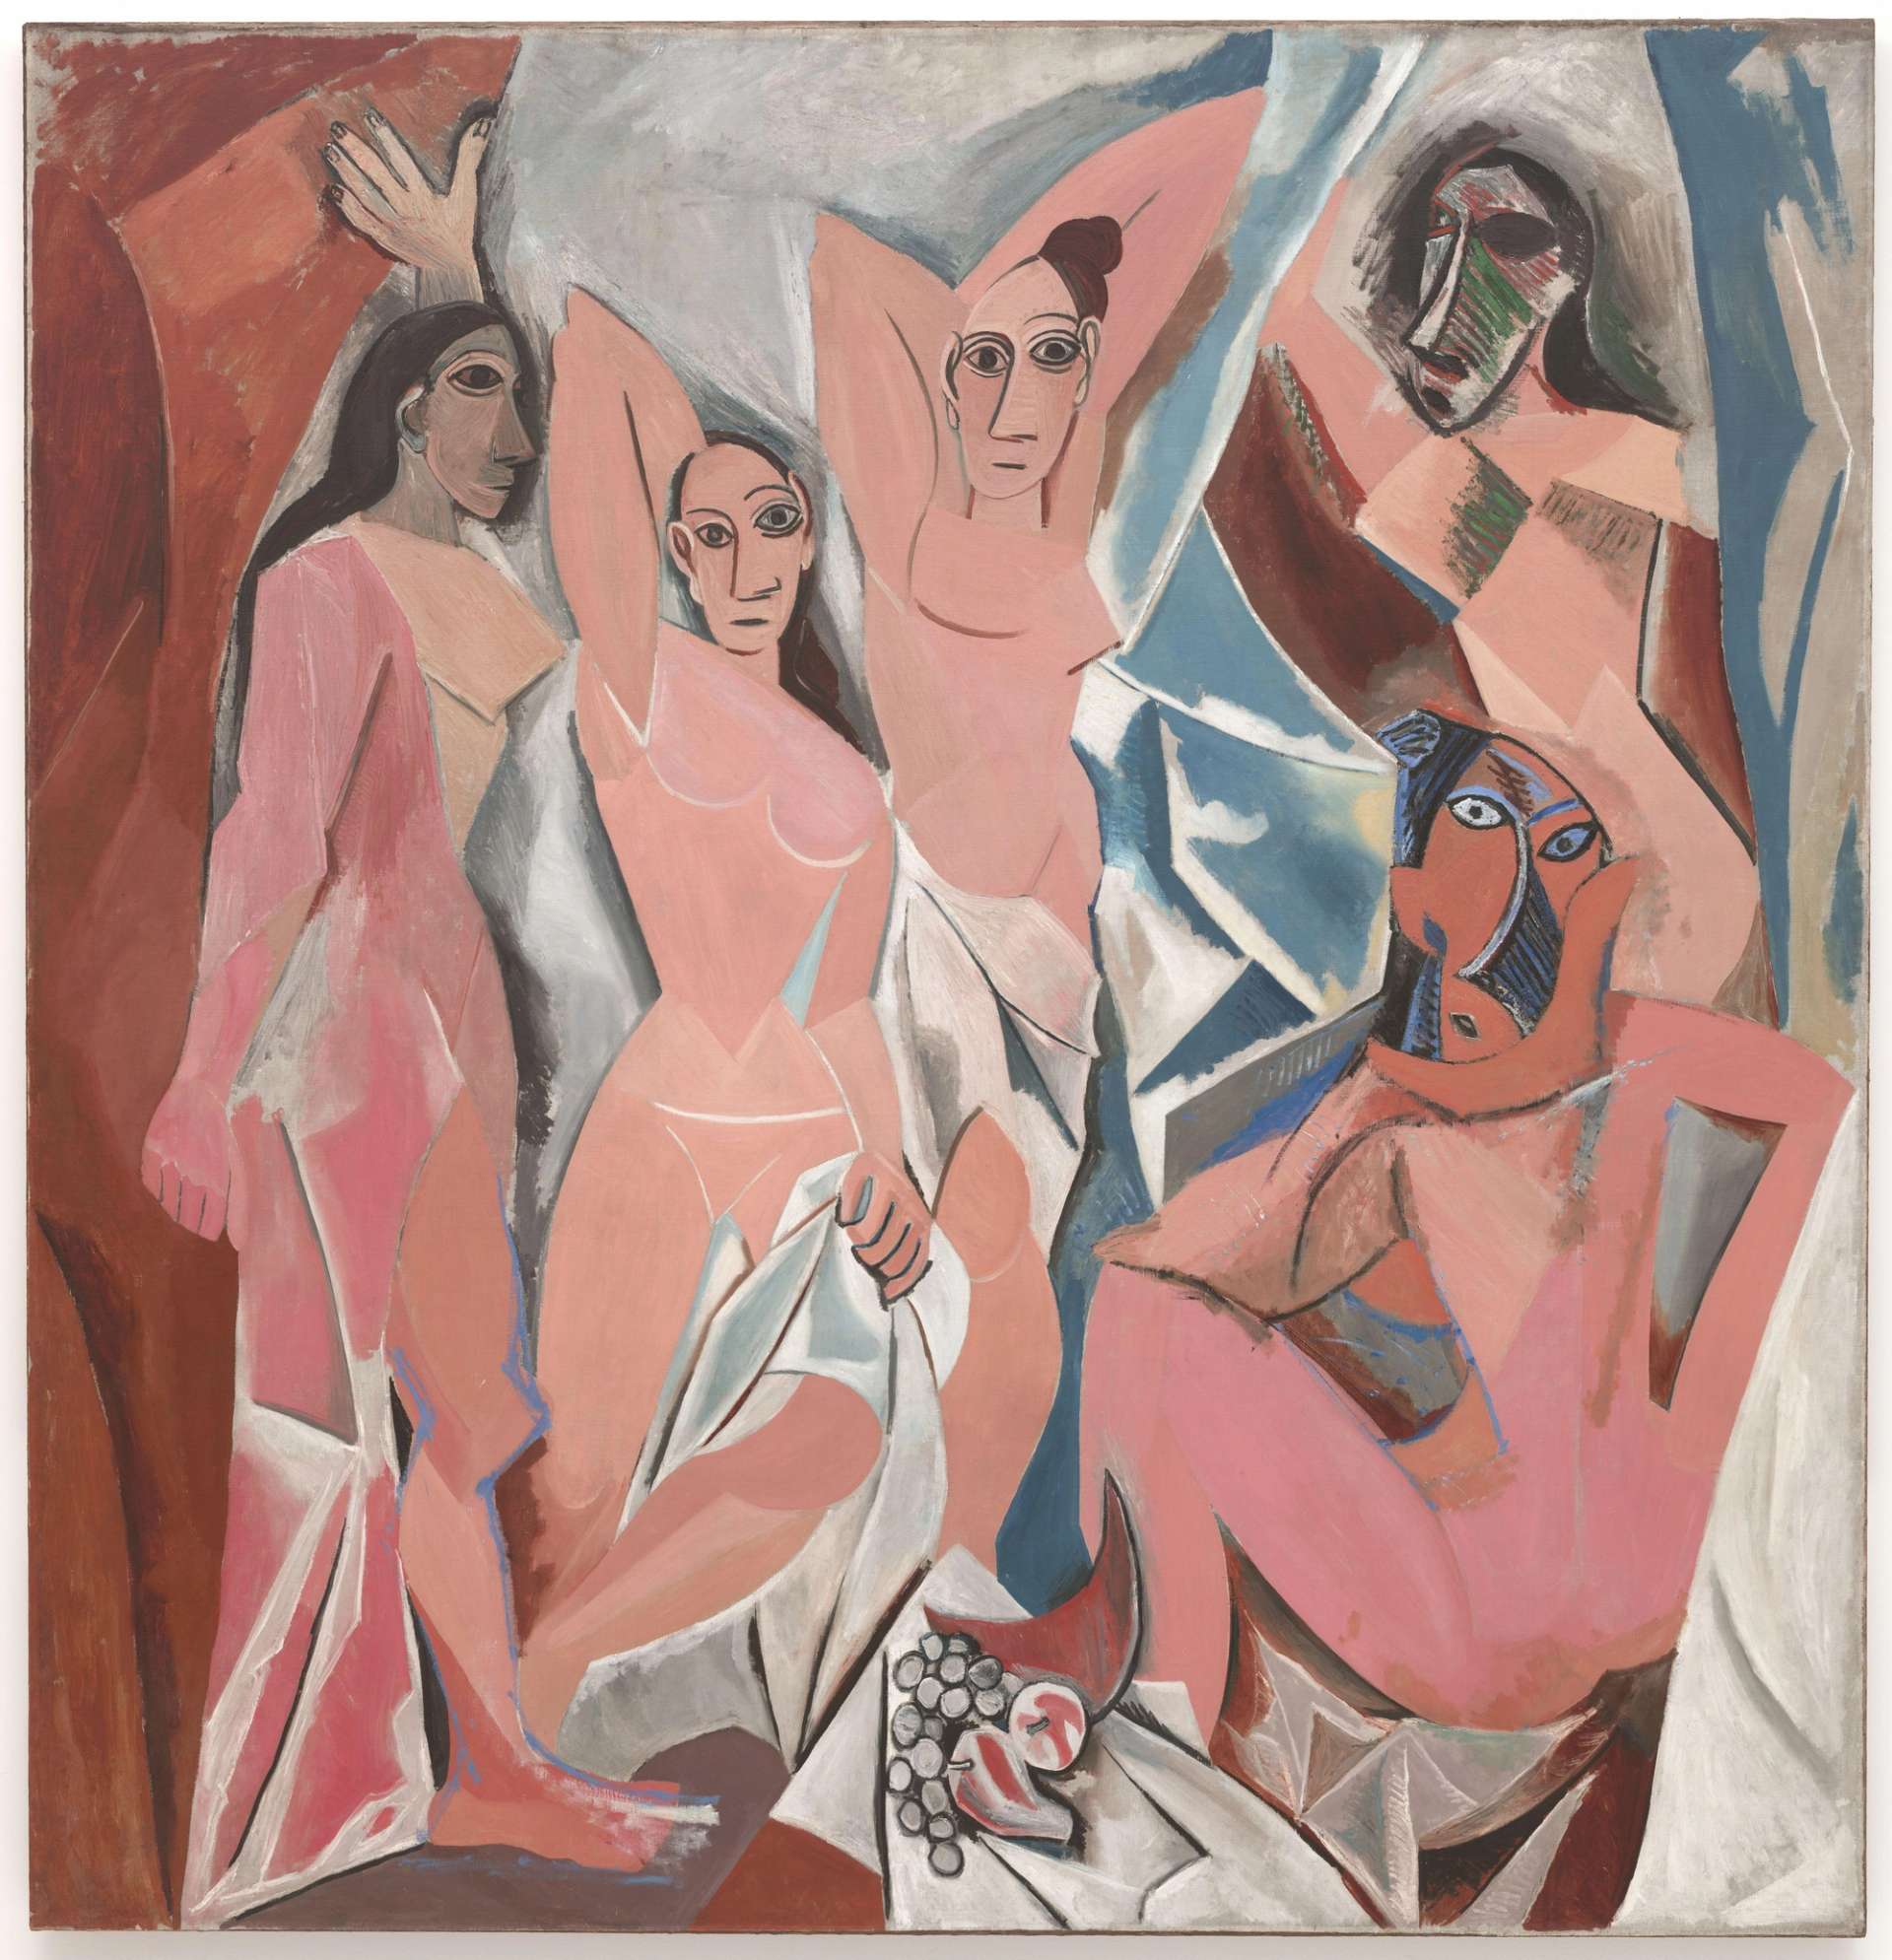 Pablo Picasso's 10 Most Famous Artworks